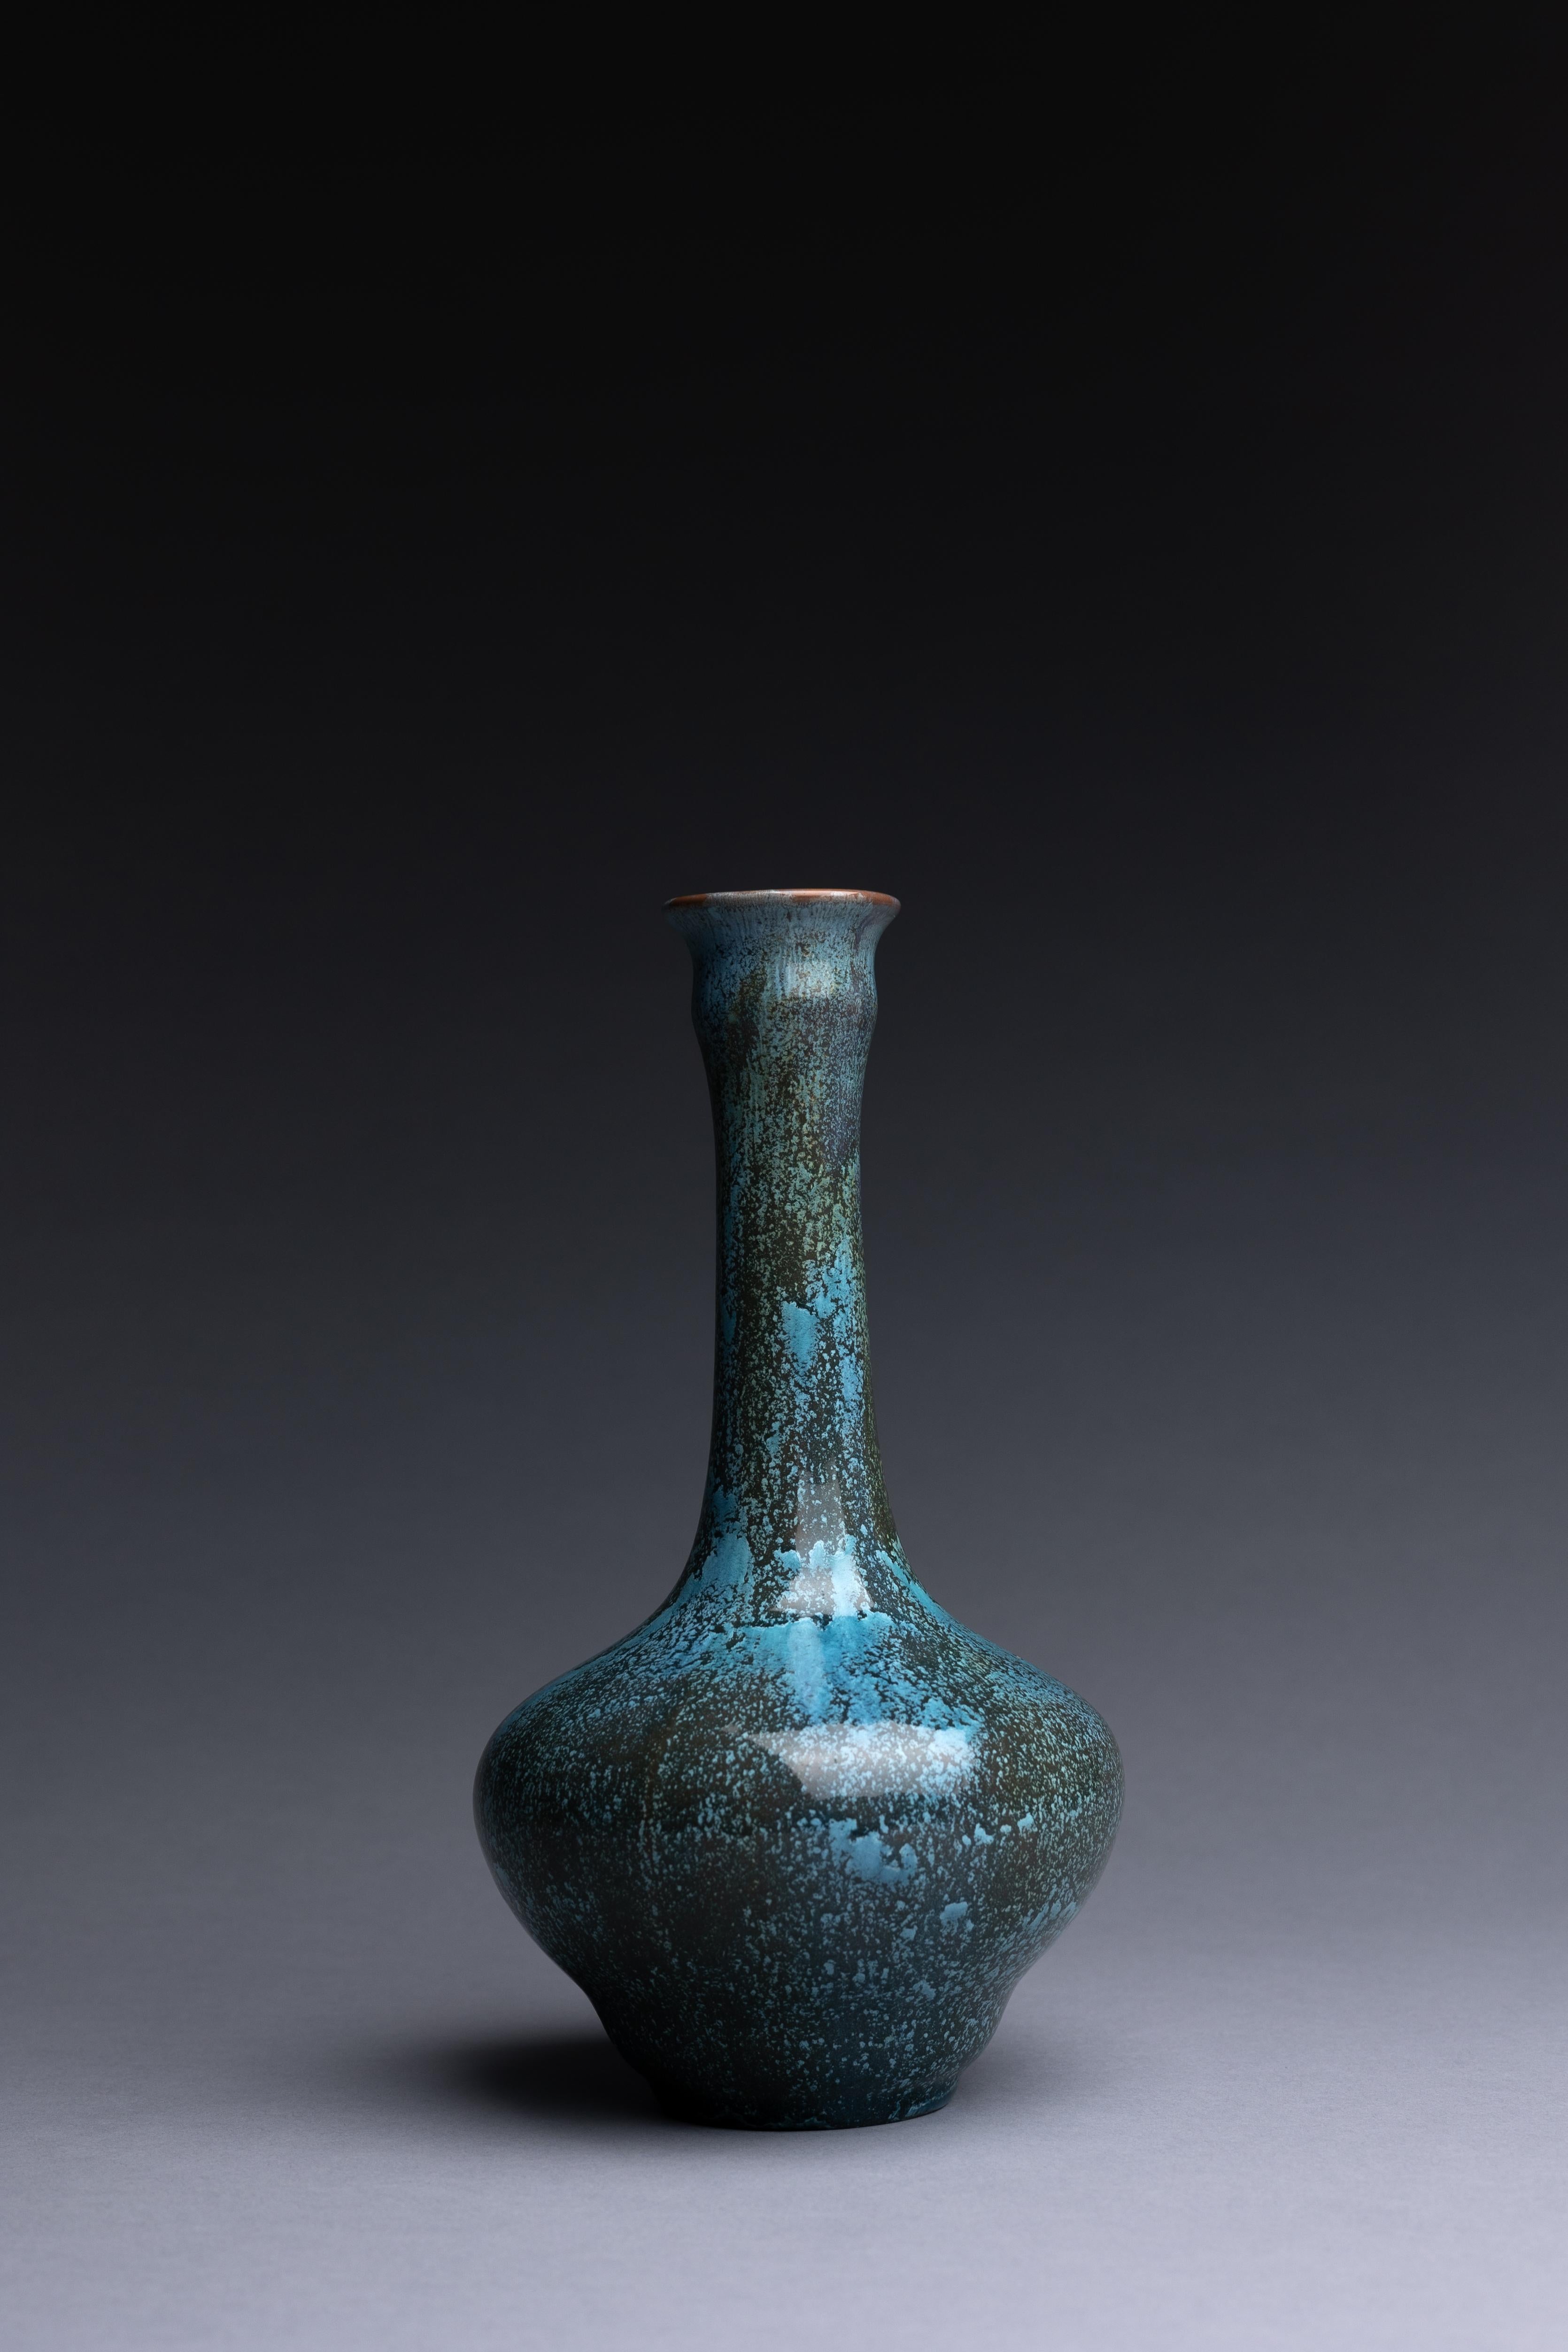 Vase aus Kunstkeramik von Pilkingtons mit blauer kristalliner Glasur, hergestellt um 1910. Diese Vase ist ein schönes Beispiel für Pilkingtons Studio-Kunstkeramik.

Die monochrom glasierte Kunstkeramik von Pilkington zeugt von den Innovationen des